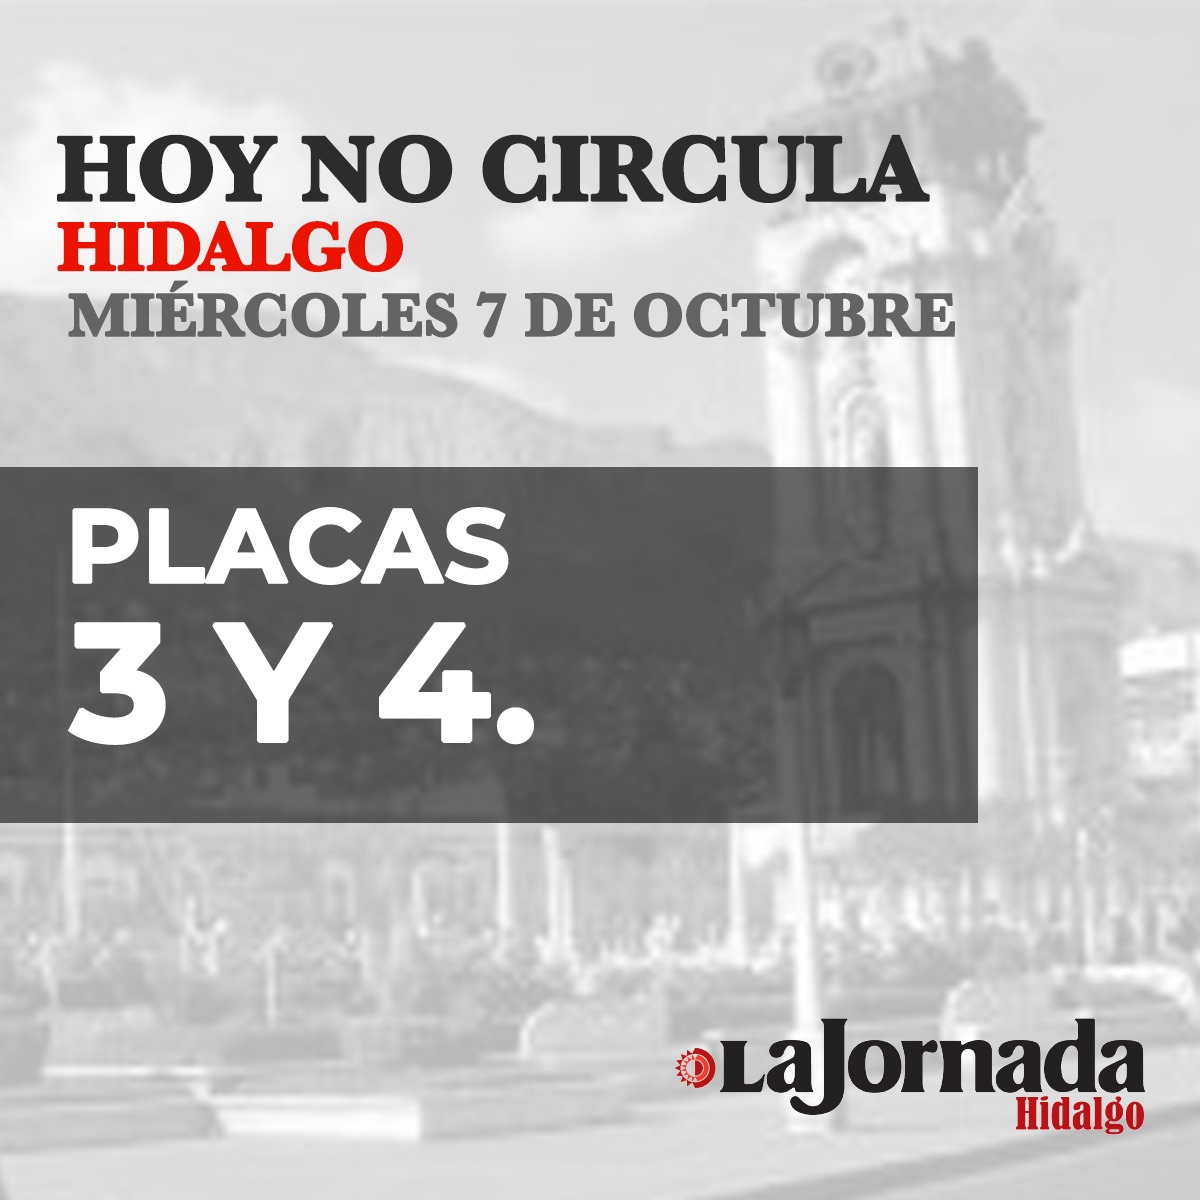 Hoy No Circula Hidalgo miércoles 7 de octubre